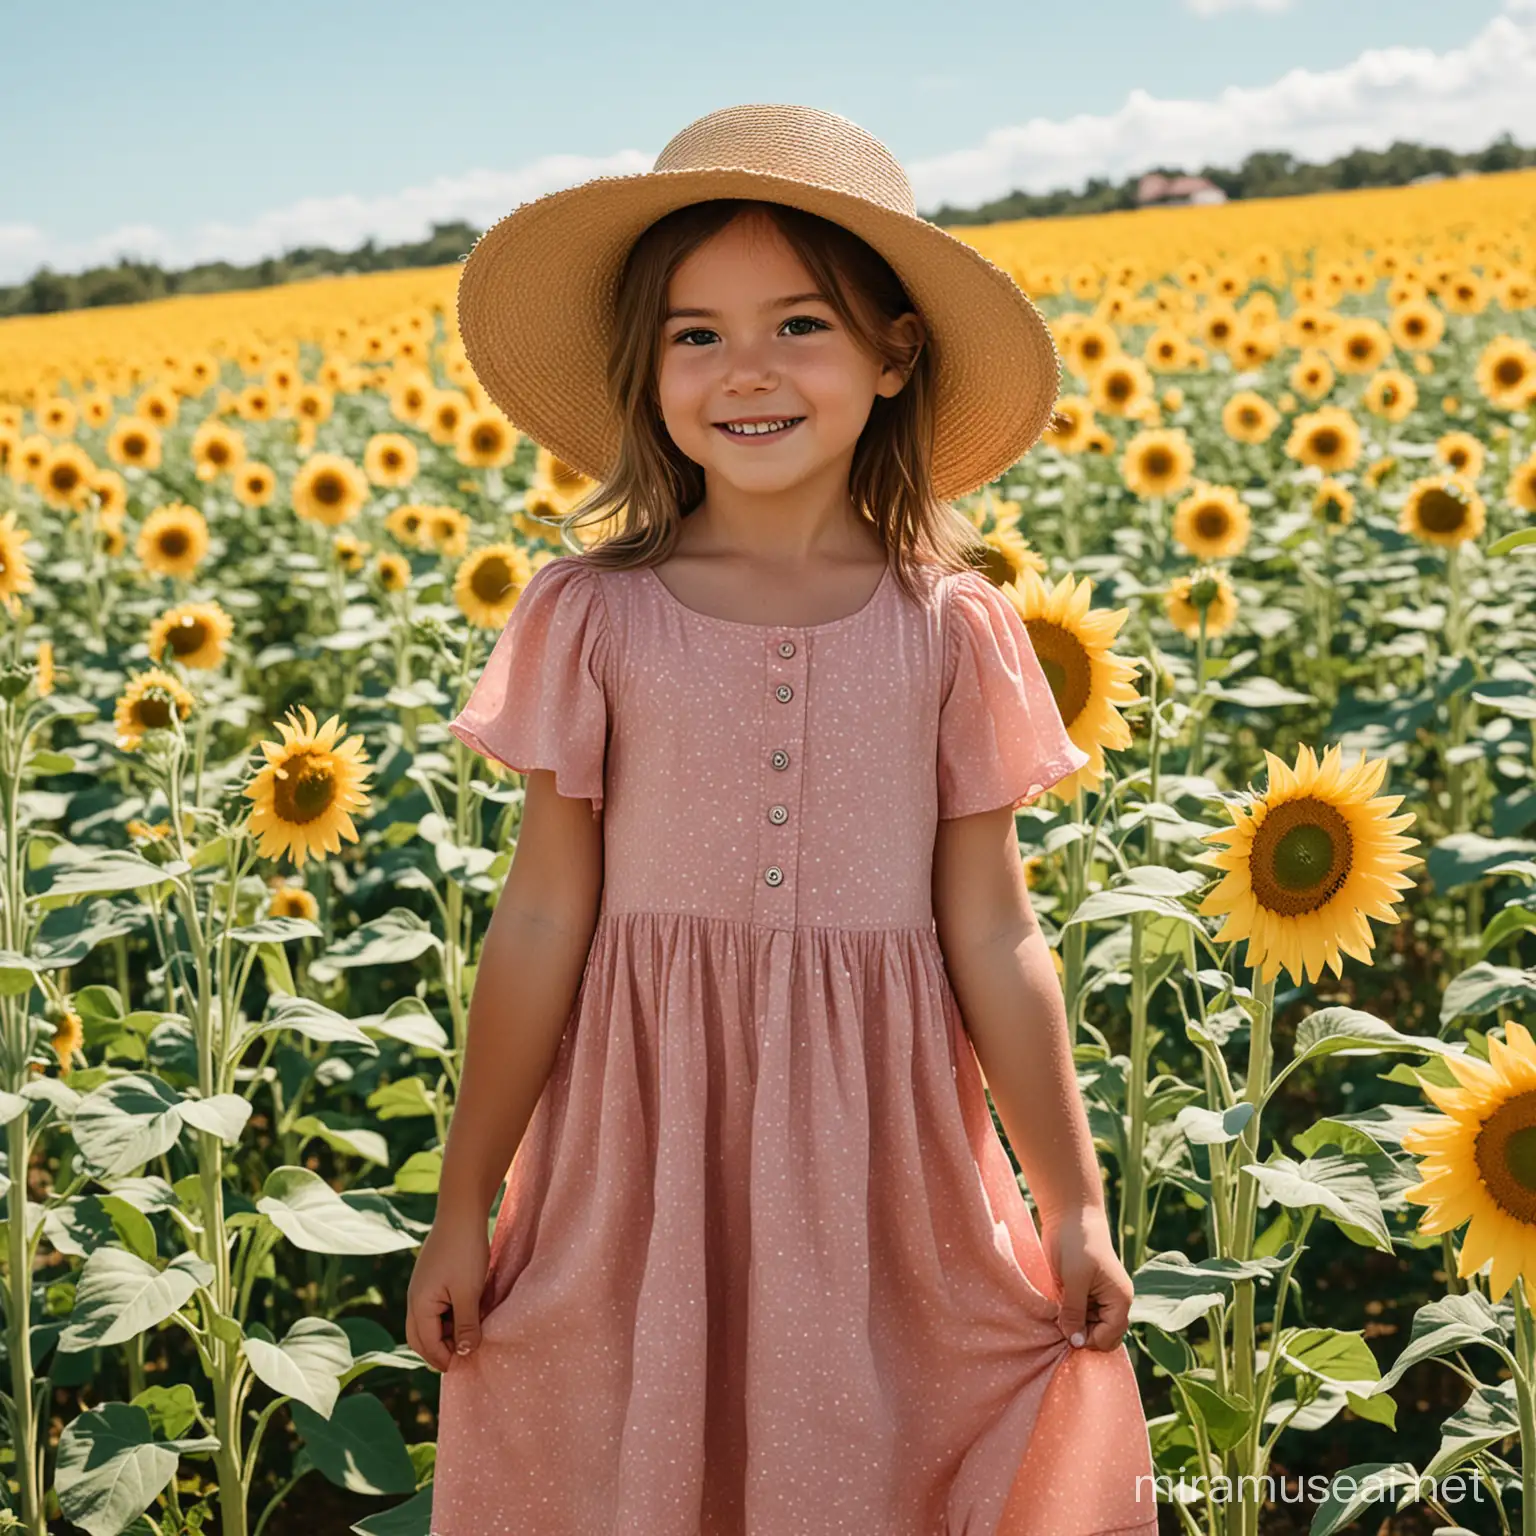 una bambina ricciola in un campo di girasoli con cappello di paglia e un vestito rosa